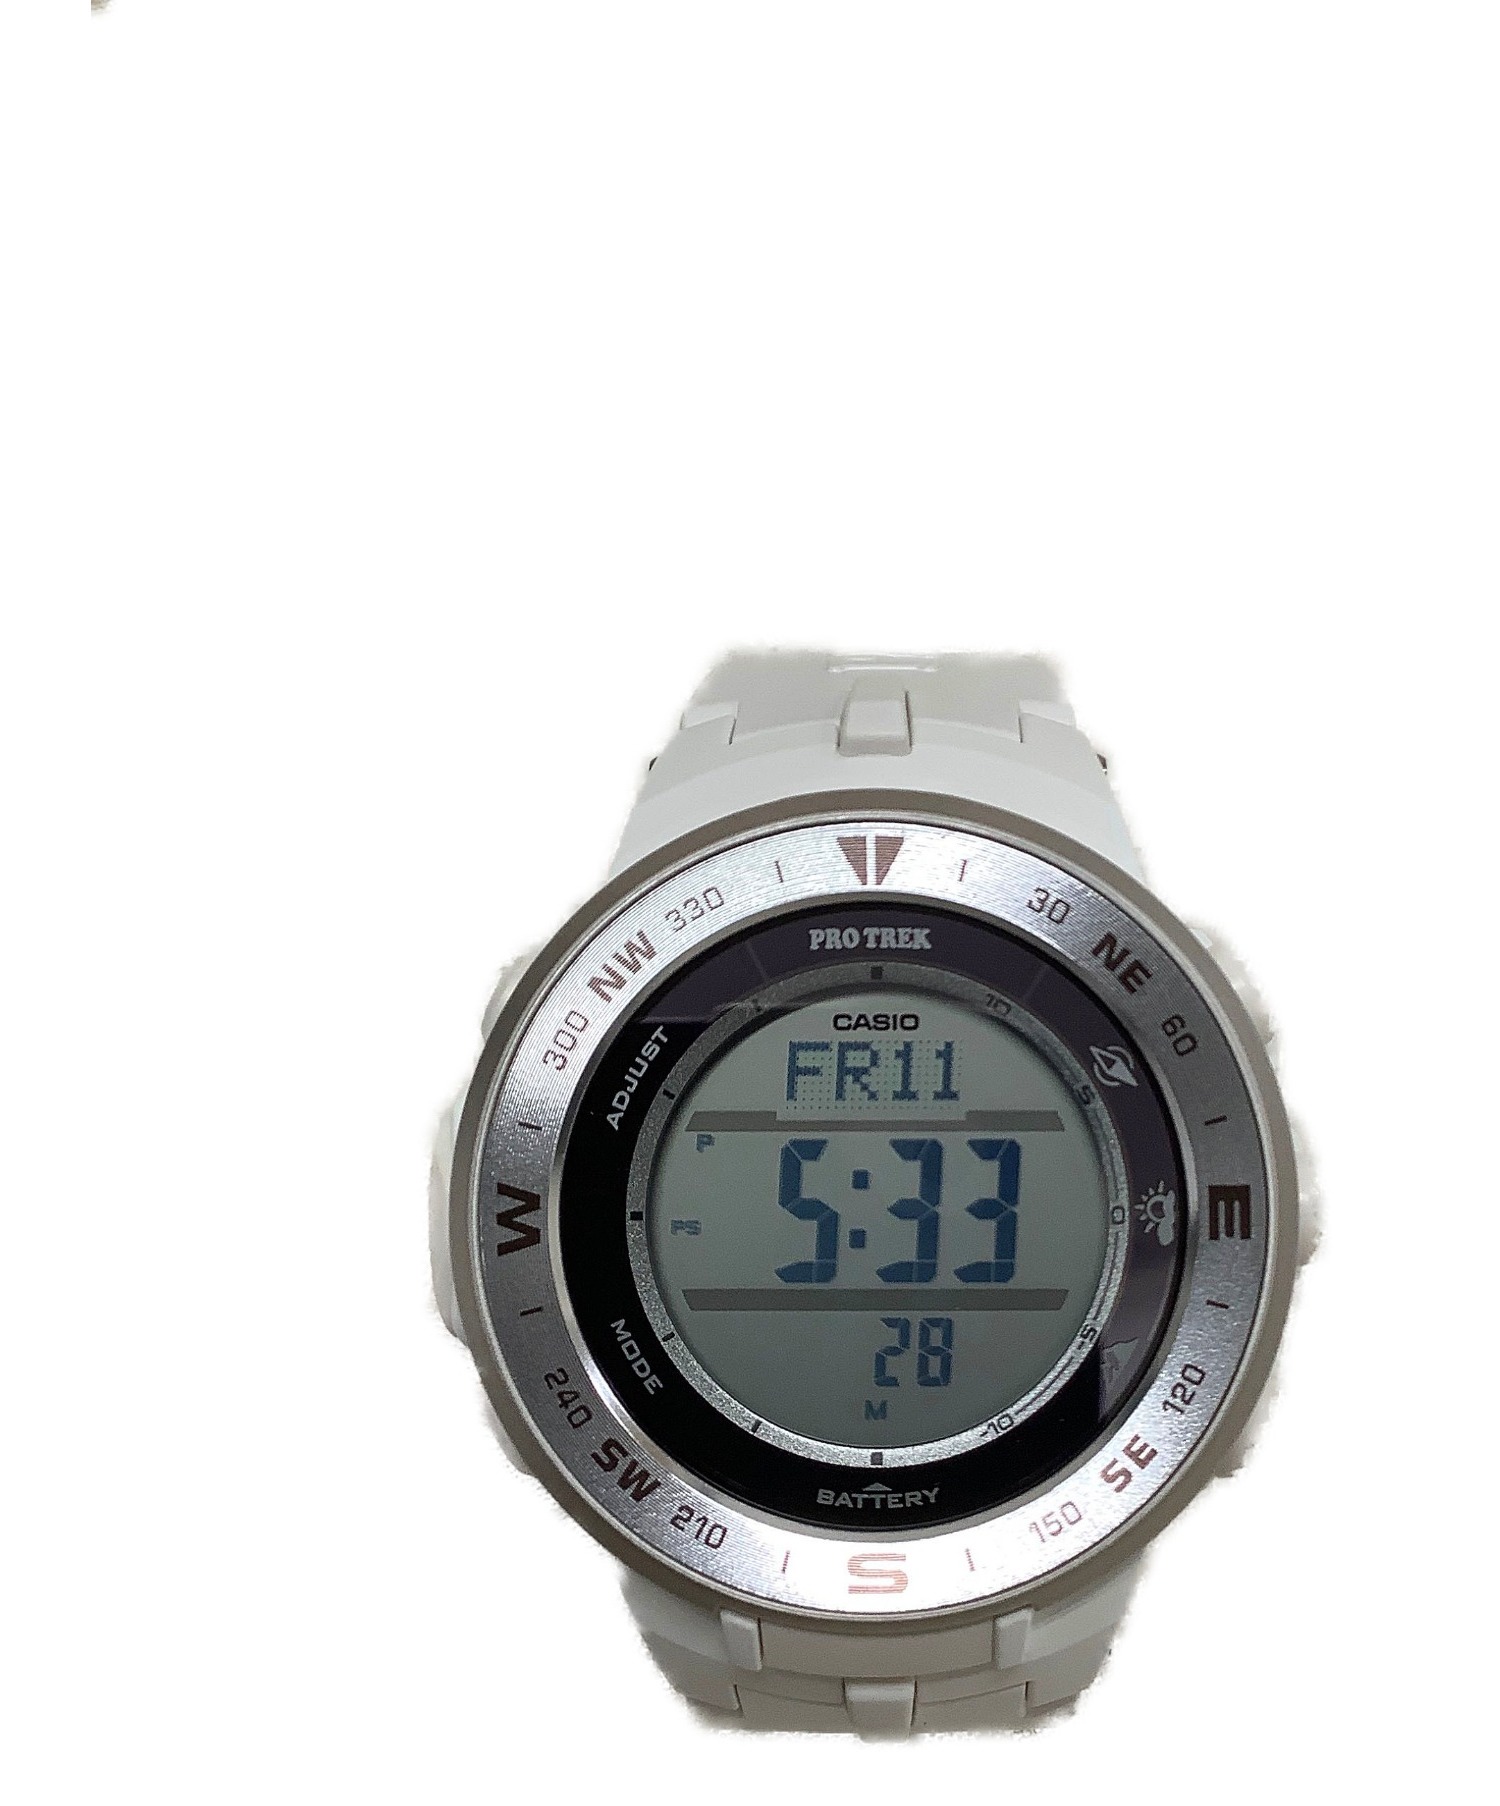 中古 古着通販 Casio カシオ 腕時計 ホワイト 未使用品 Pro Trek Prg 330 7jf ソーラー充電 ラバー ブランド 古着通販 トレファク公式 Trefac Fashion